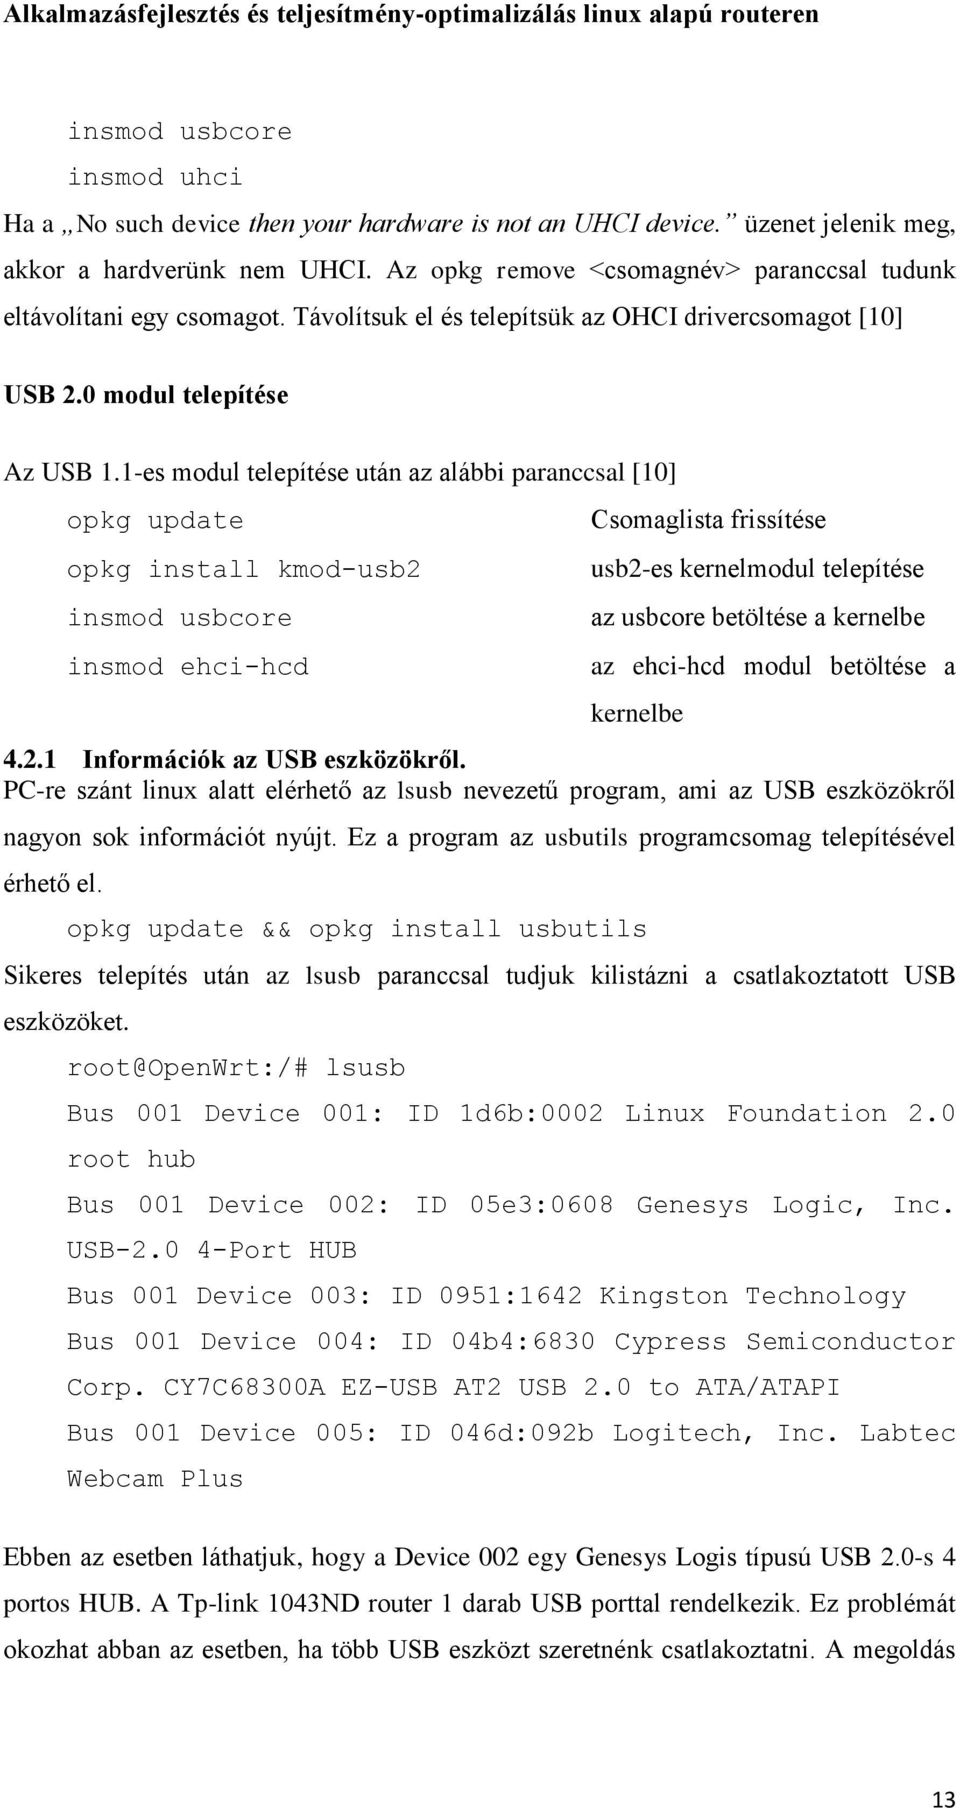 1-es modul telepítése után az alábbi paranccsal [10] opkg update opkg install kmod-usb2 insmod usbcore insmod ehci-hcd Csomaglista frissítése usb2-es kernelmodul telepítése az usbcore betöltése a